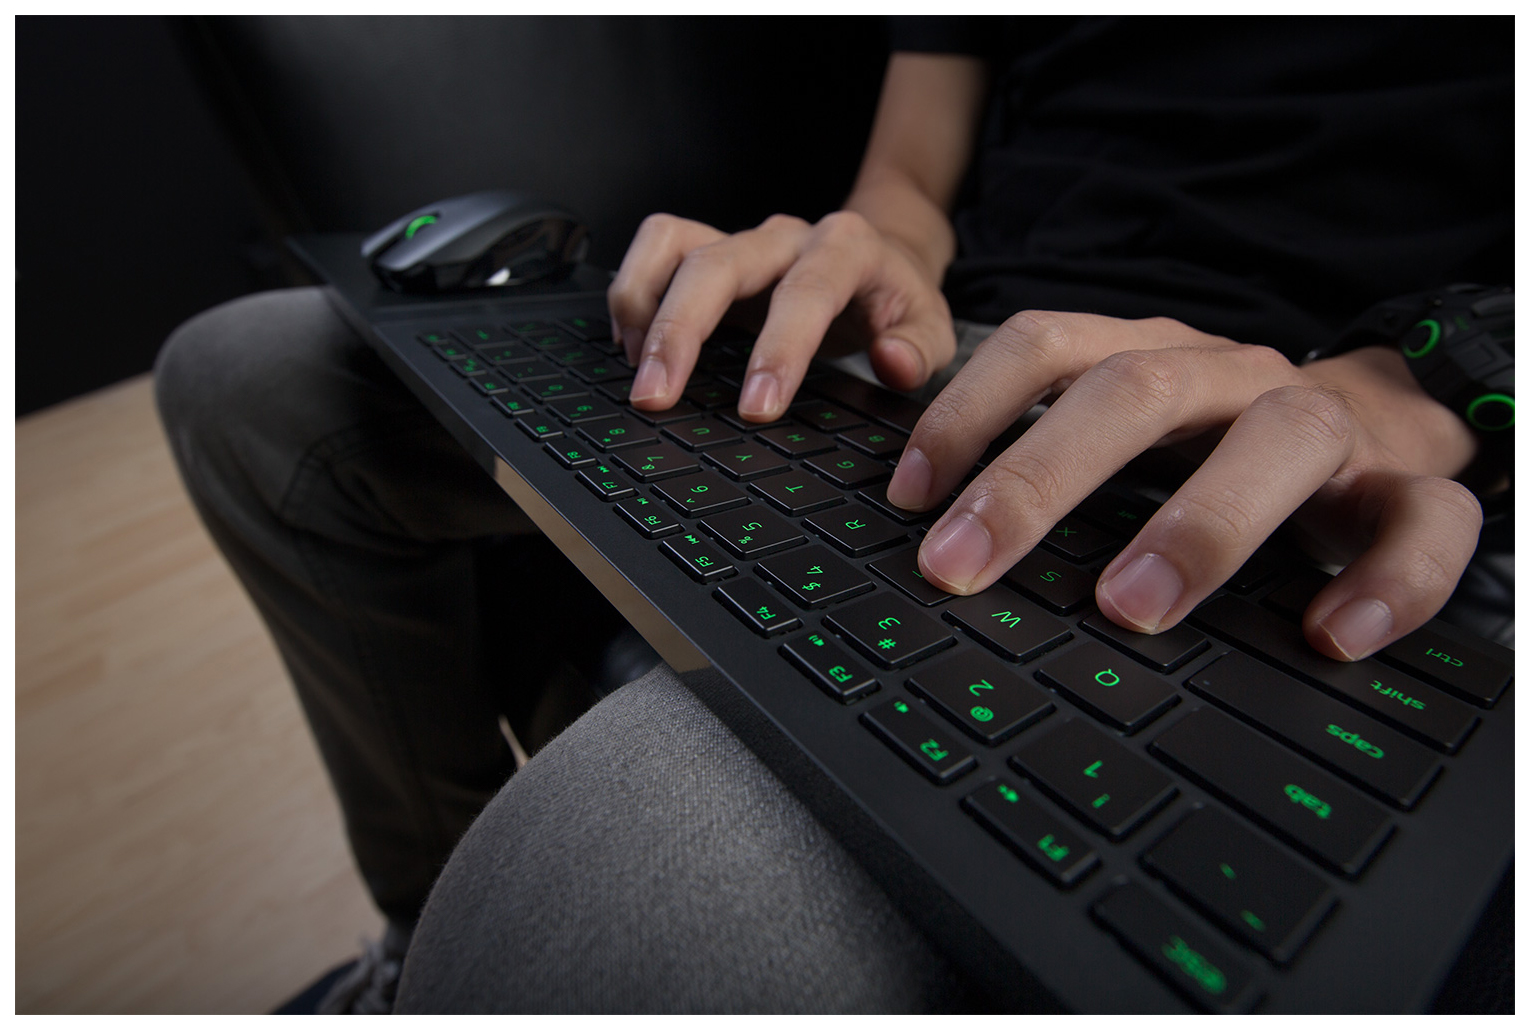 Keyboard support. Razer Turret клавиатура и мышь. Клавиатура и мышь для хбокс. Клавиатура и мышь для Xbox one. Хбокс с клавиатурой и мышкой.